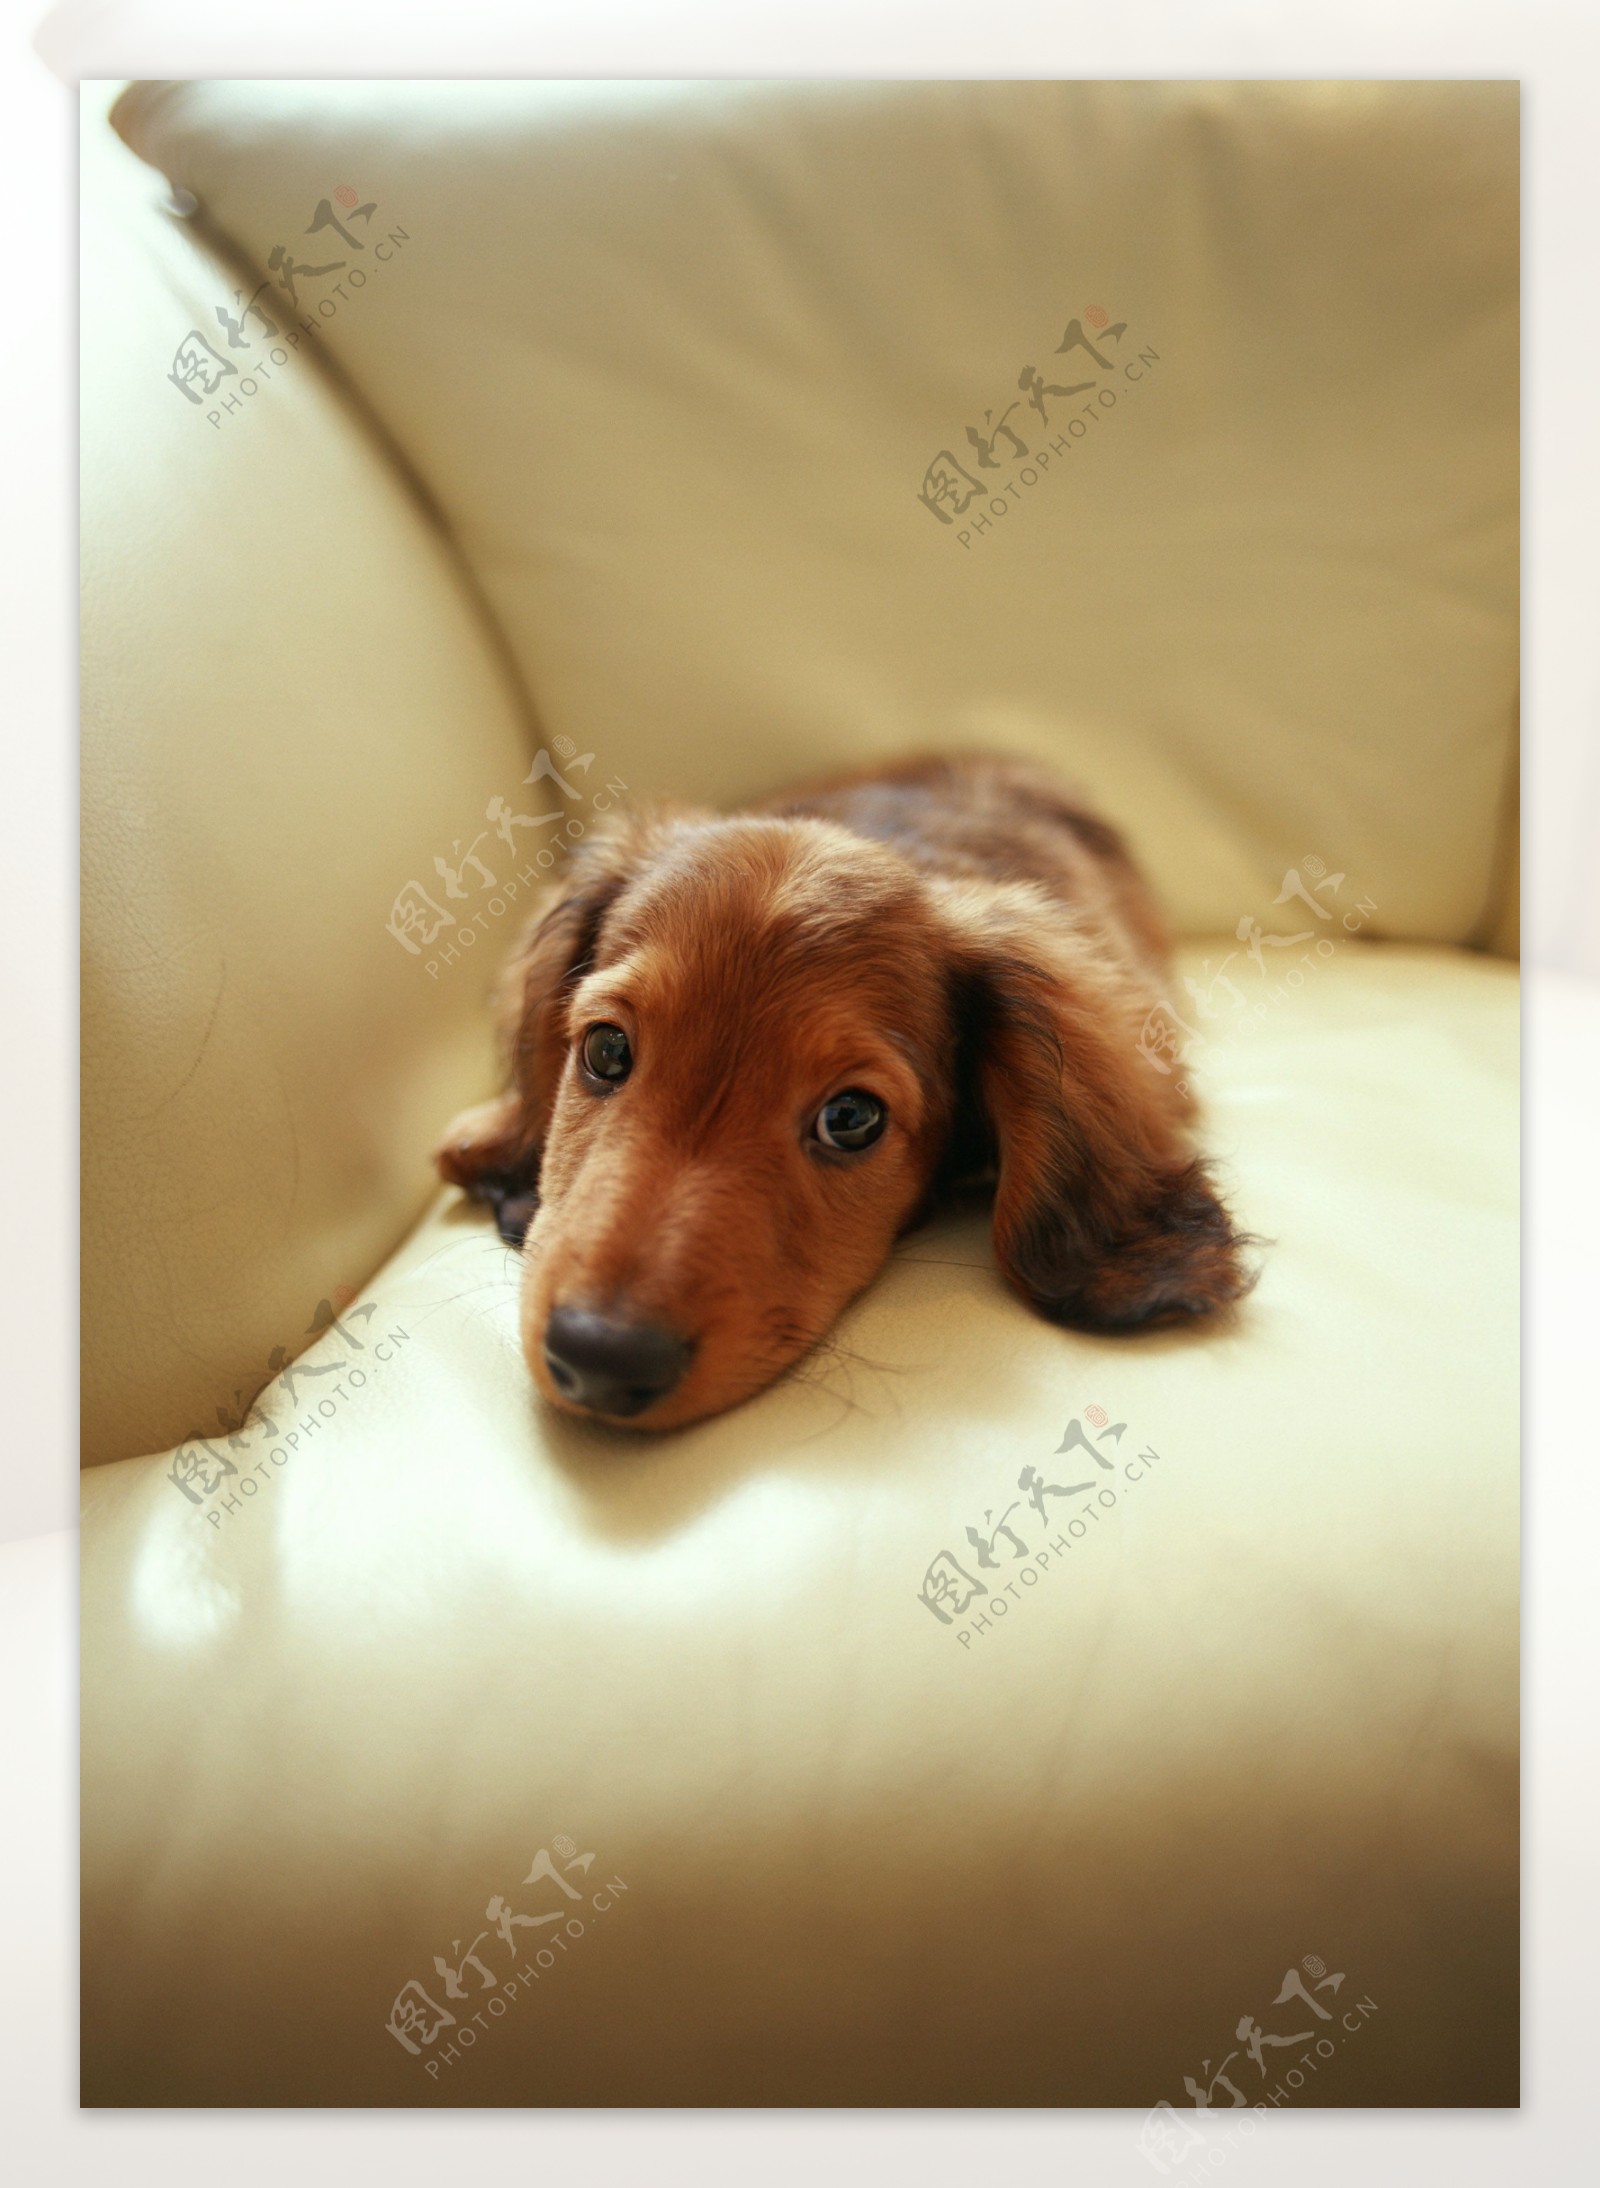 趴在沙发上的可爱狗狗图片